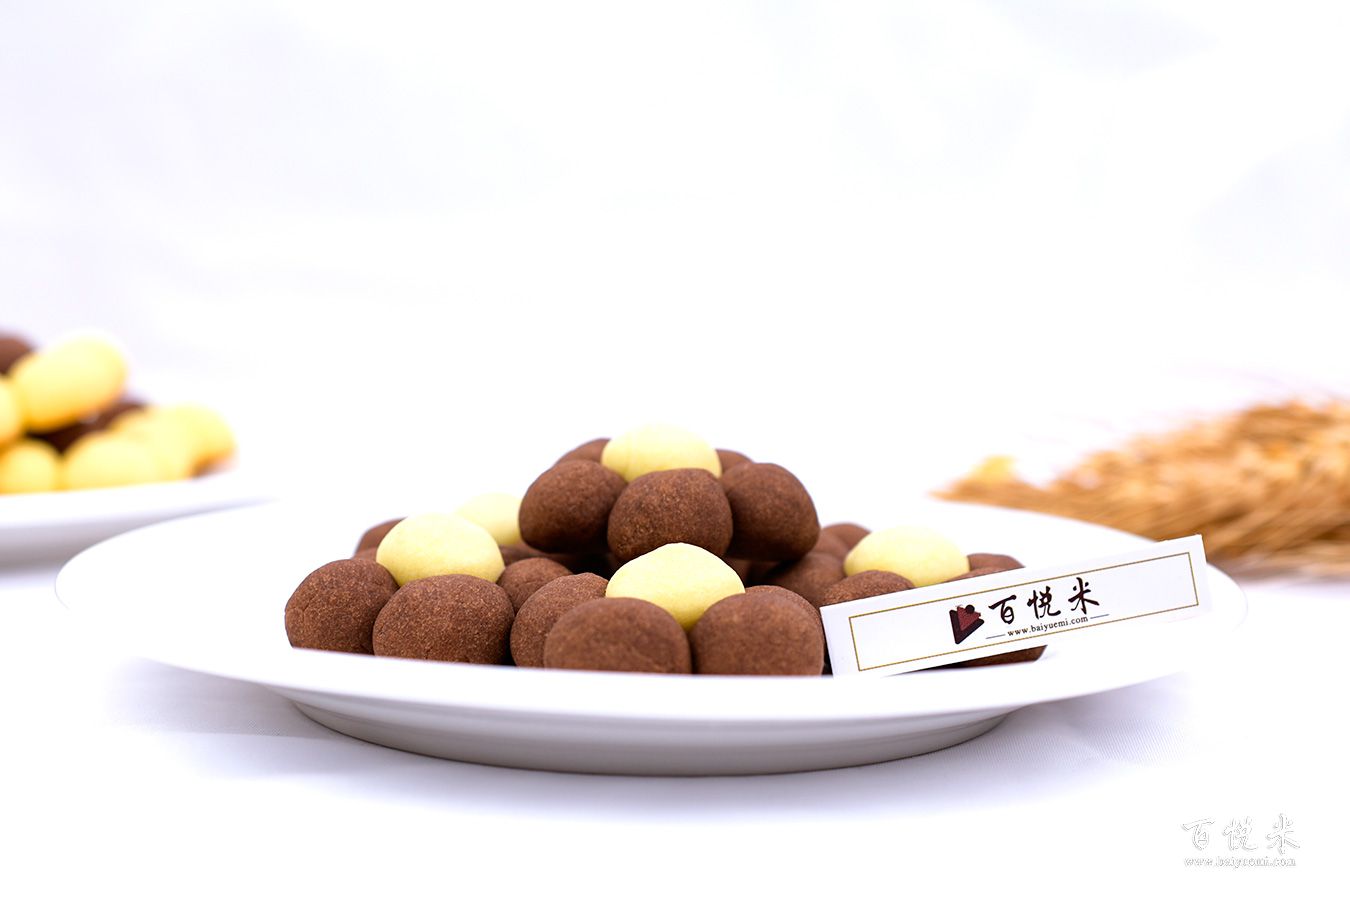 巧克力花朵饼干高清图片大全【蛋糕图片】_548